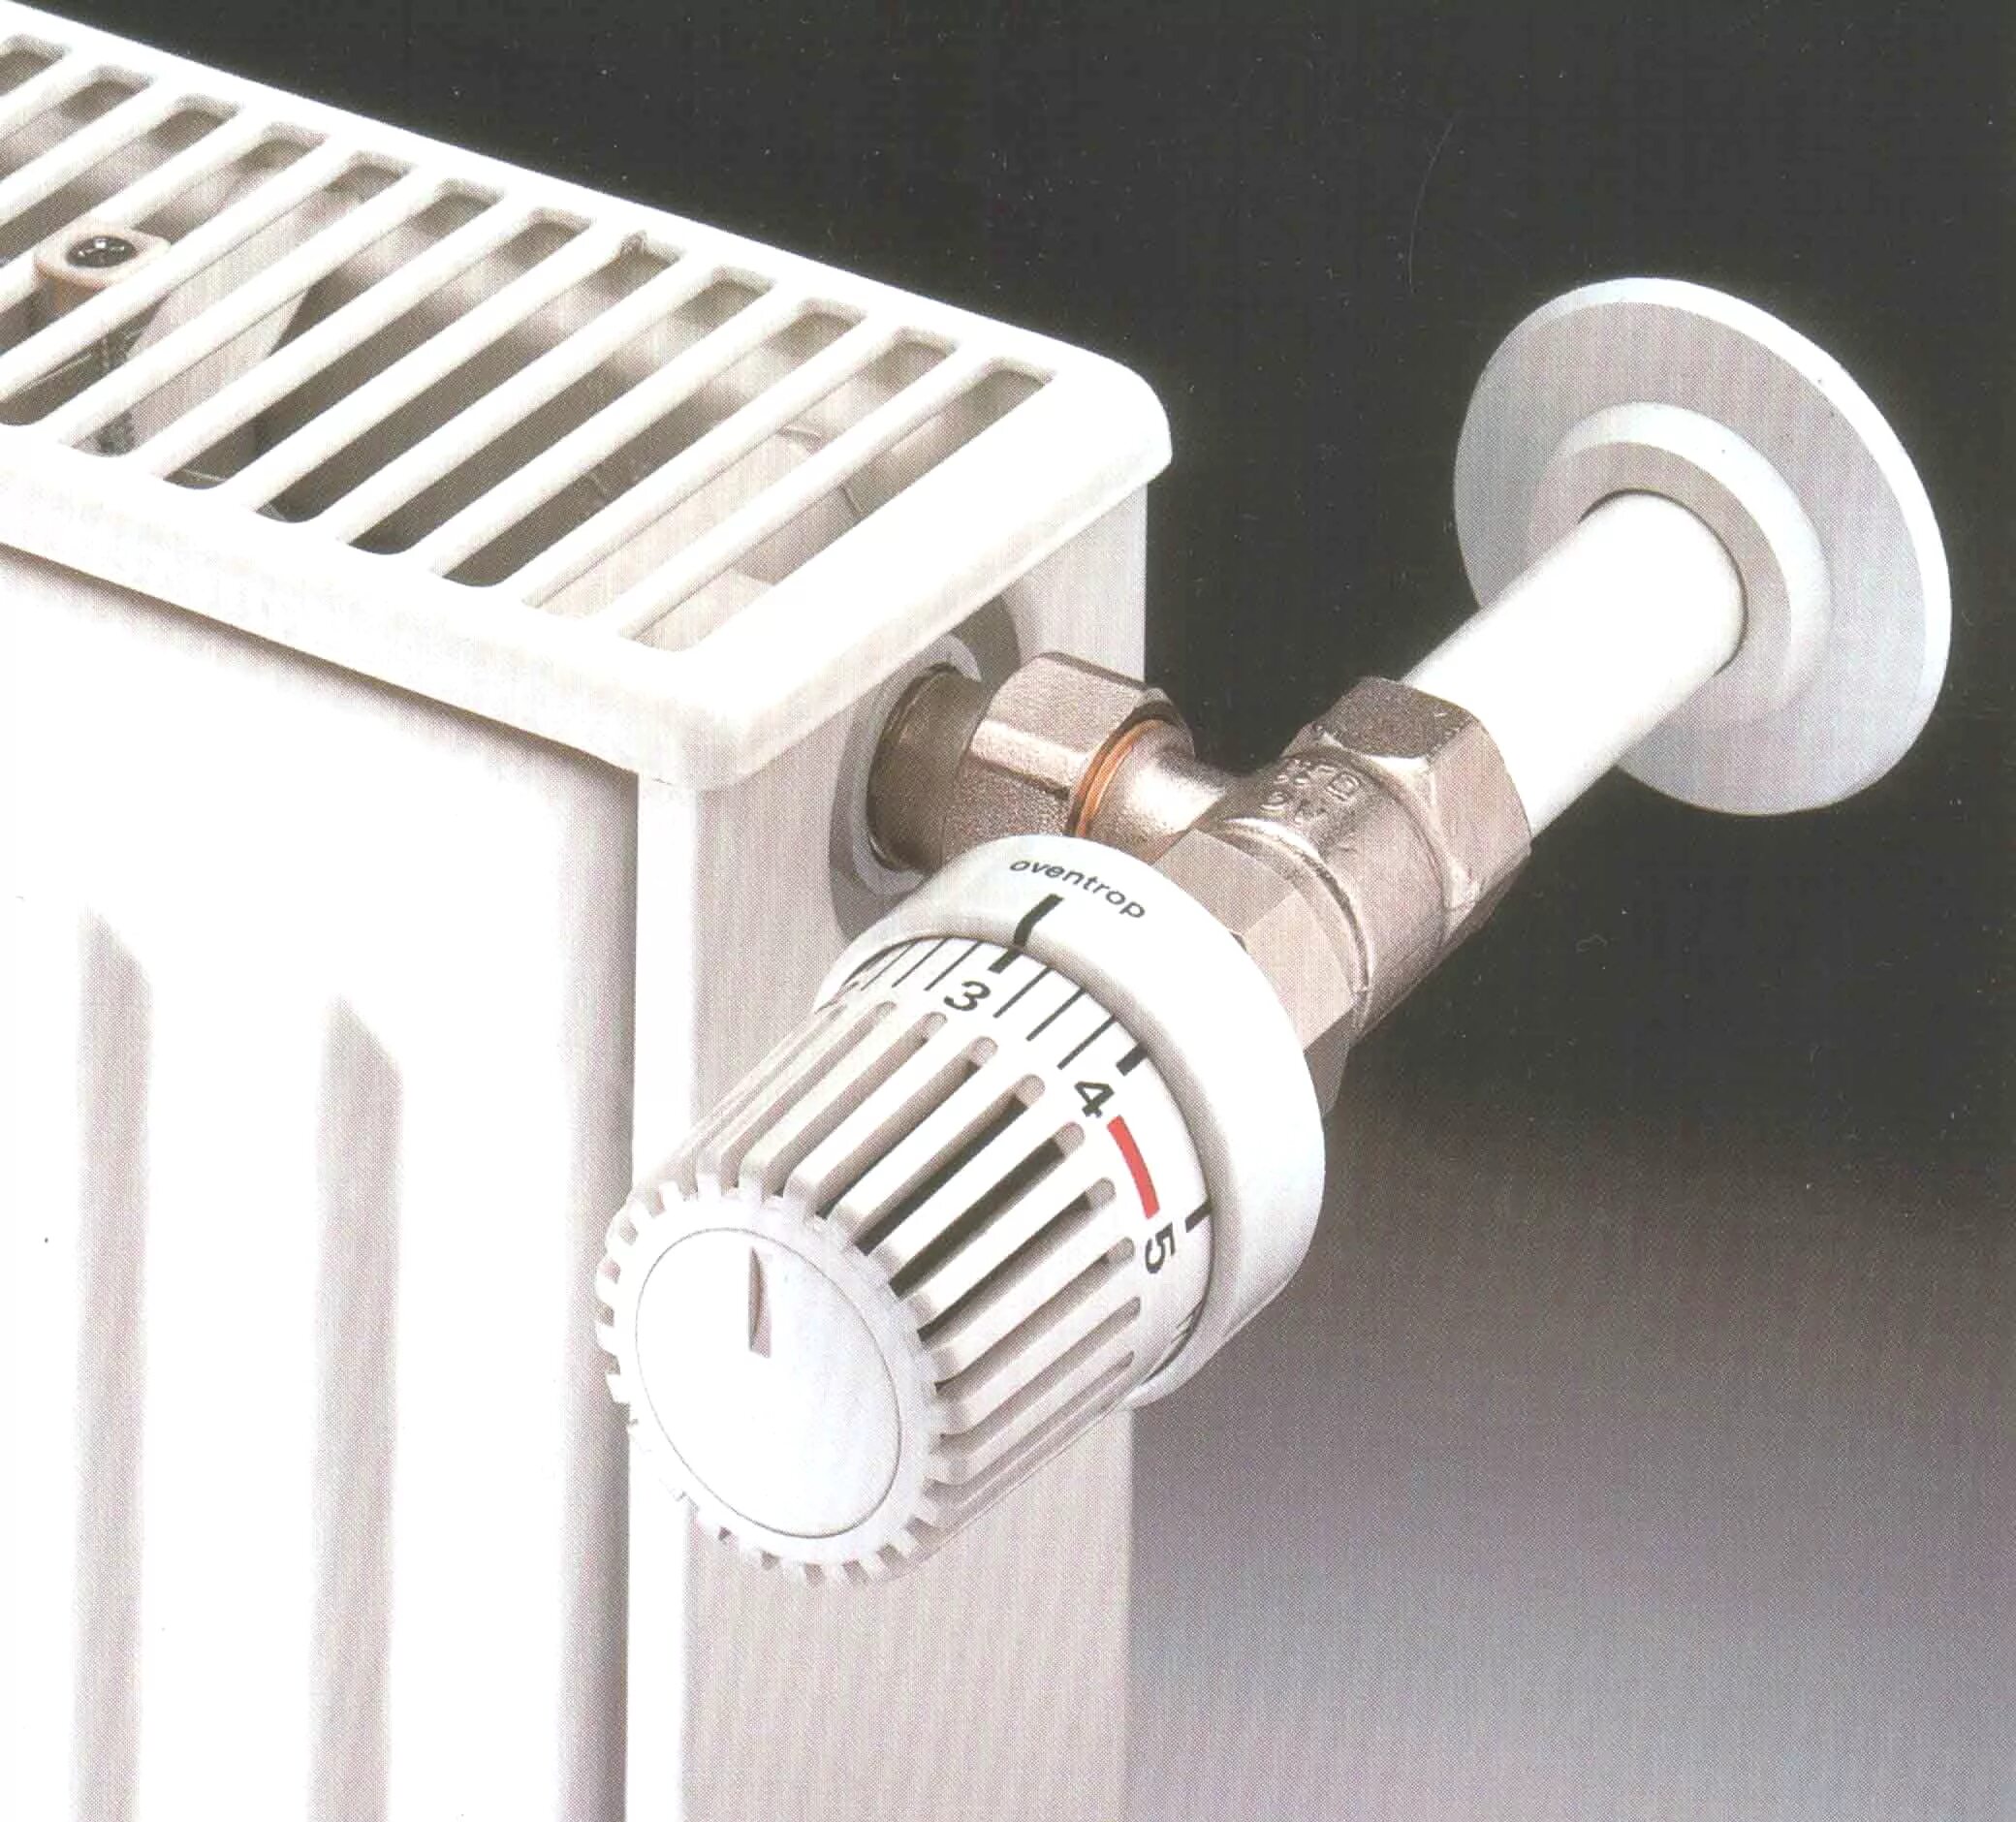 Радиаторный термостат. Регулятор тепла для батарей отопления Danfoss. Vrt регулятор радиатора отопления. Терморегулятор осевой для радиатора отопления. Термодатчик на батарею отопления.